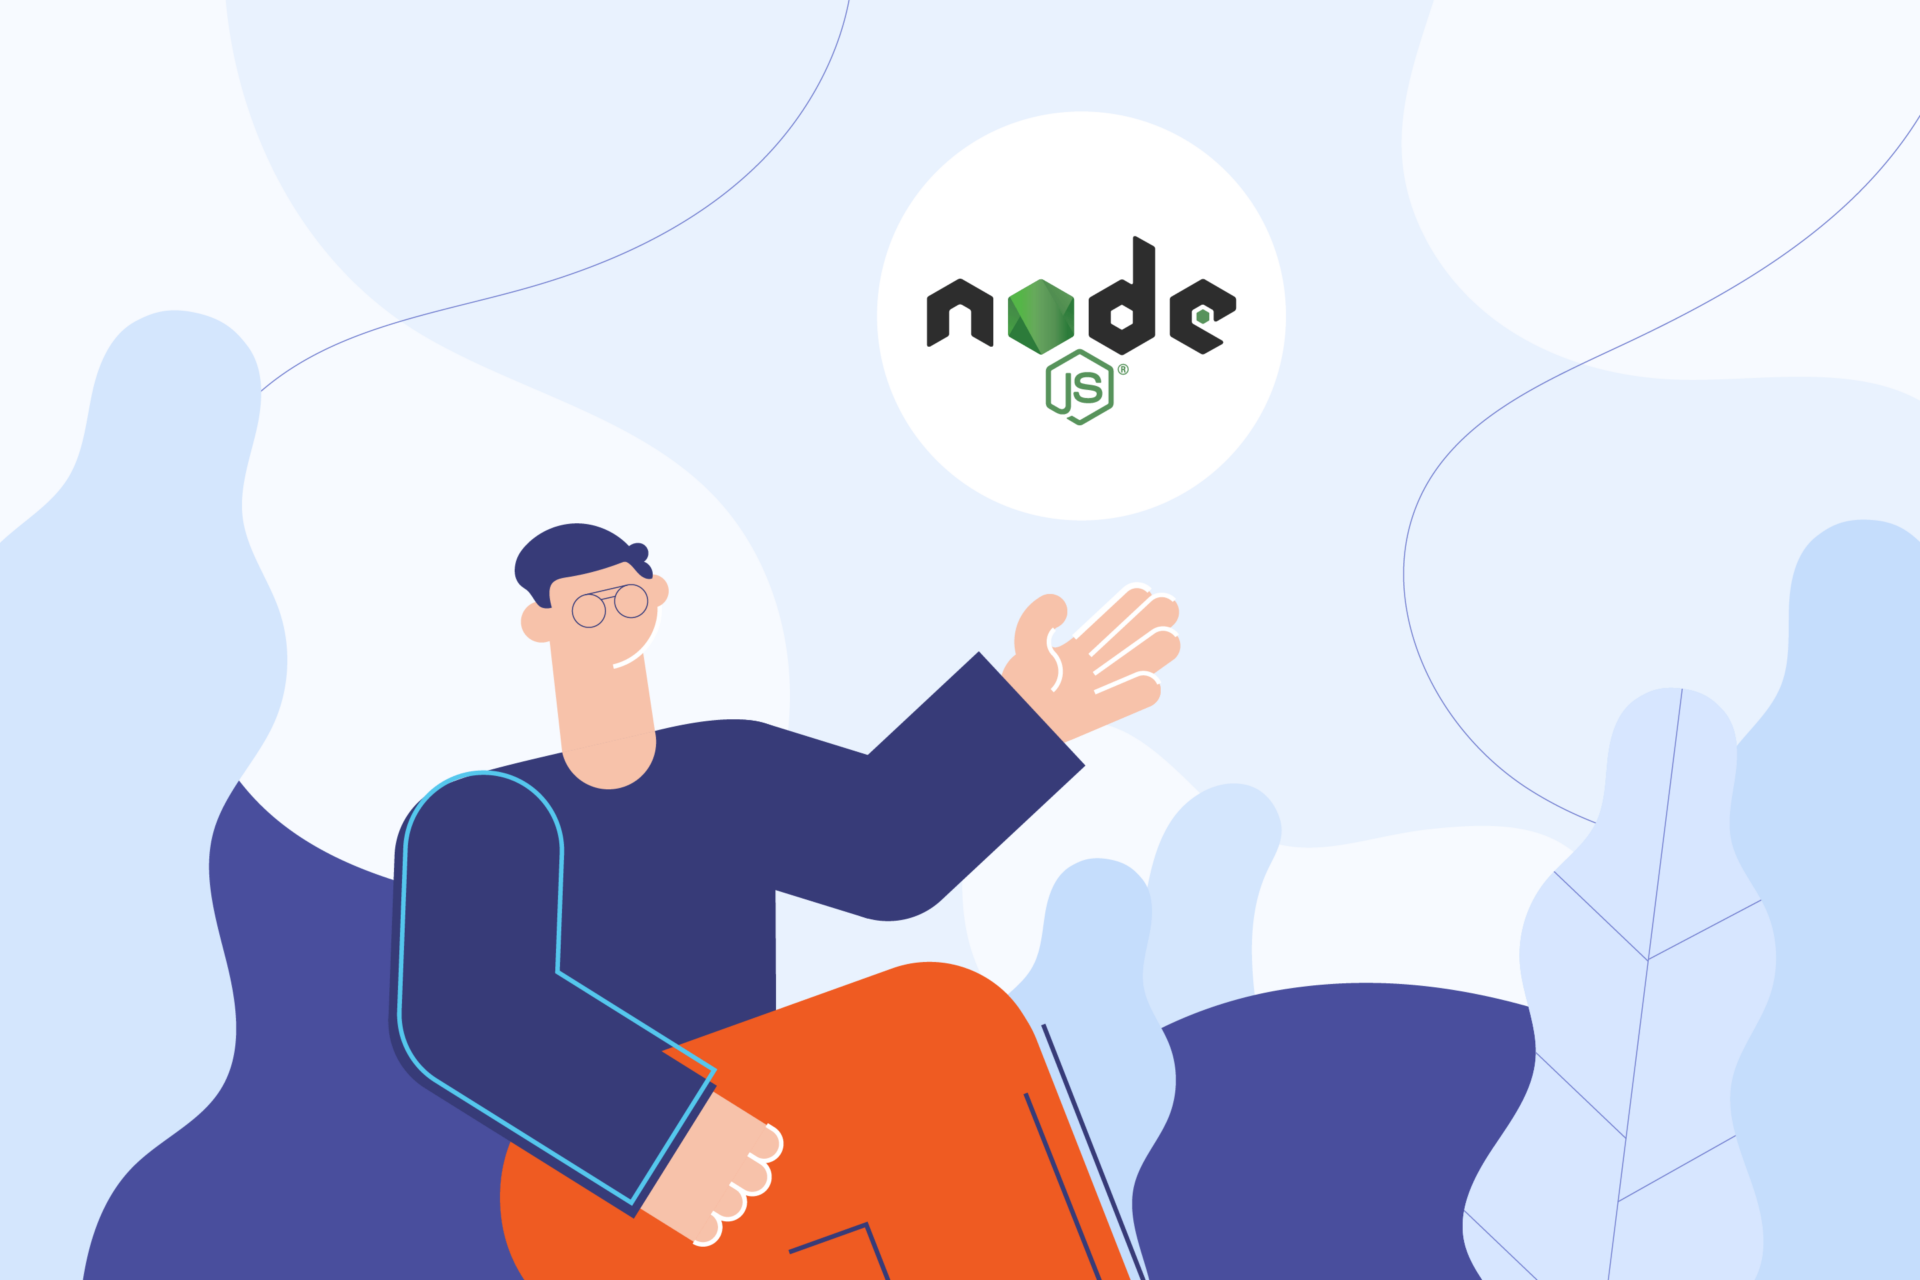 Why use Node JS in enterprise apps